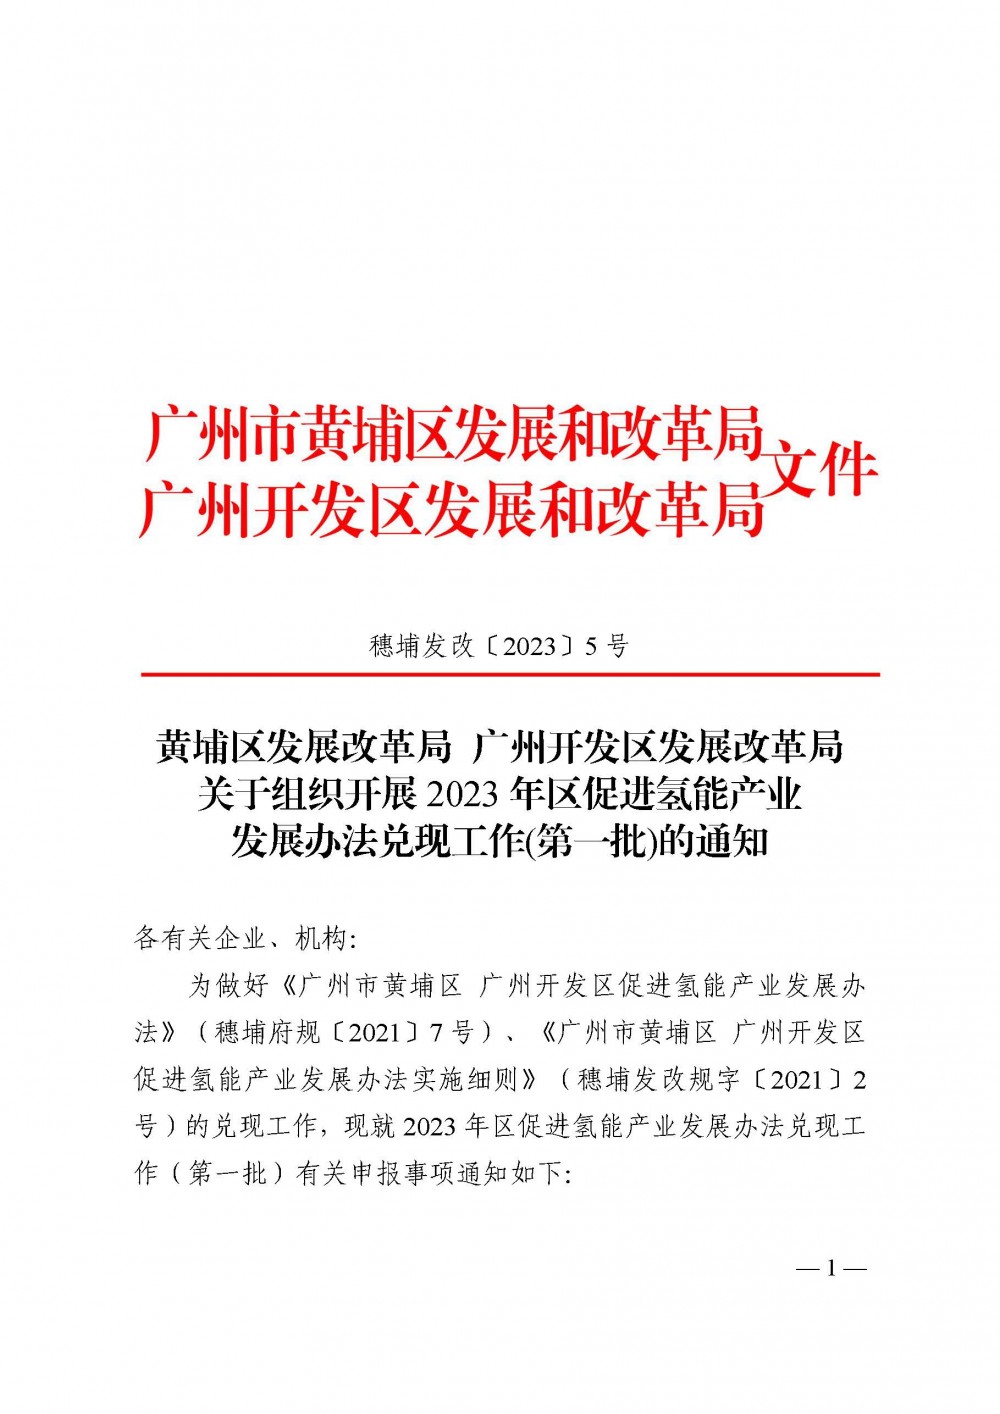 广州黄埔启动2023年首批氢能产业补贴申报(图3)